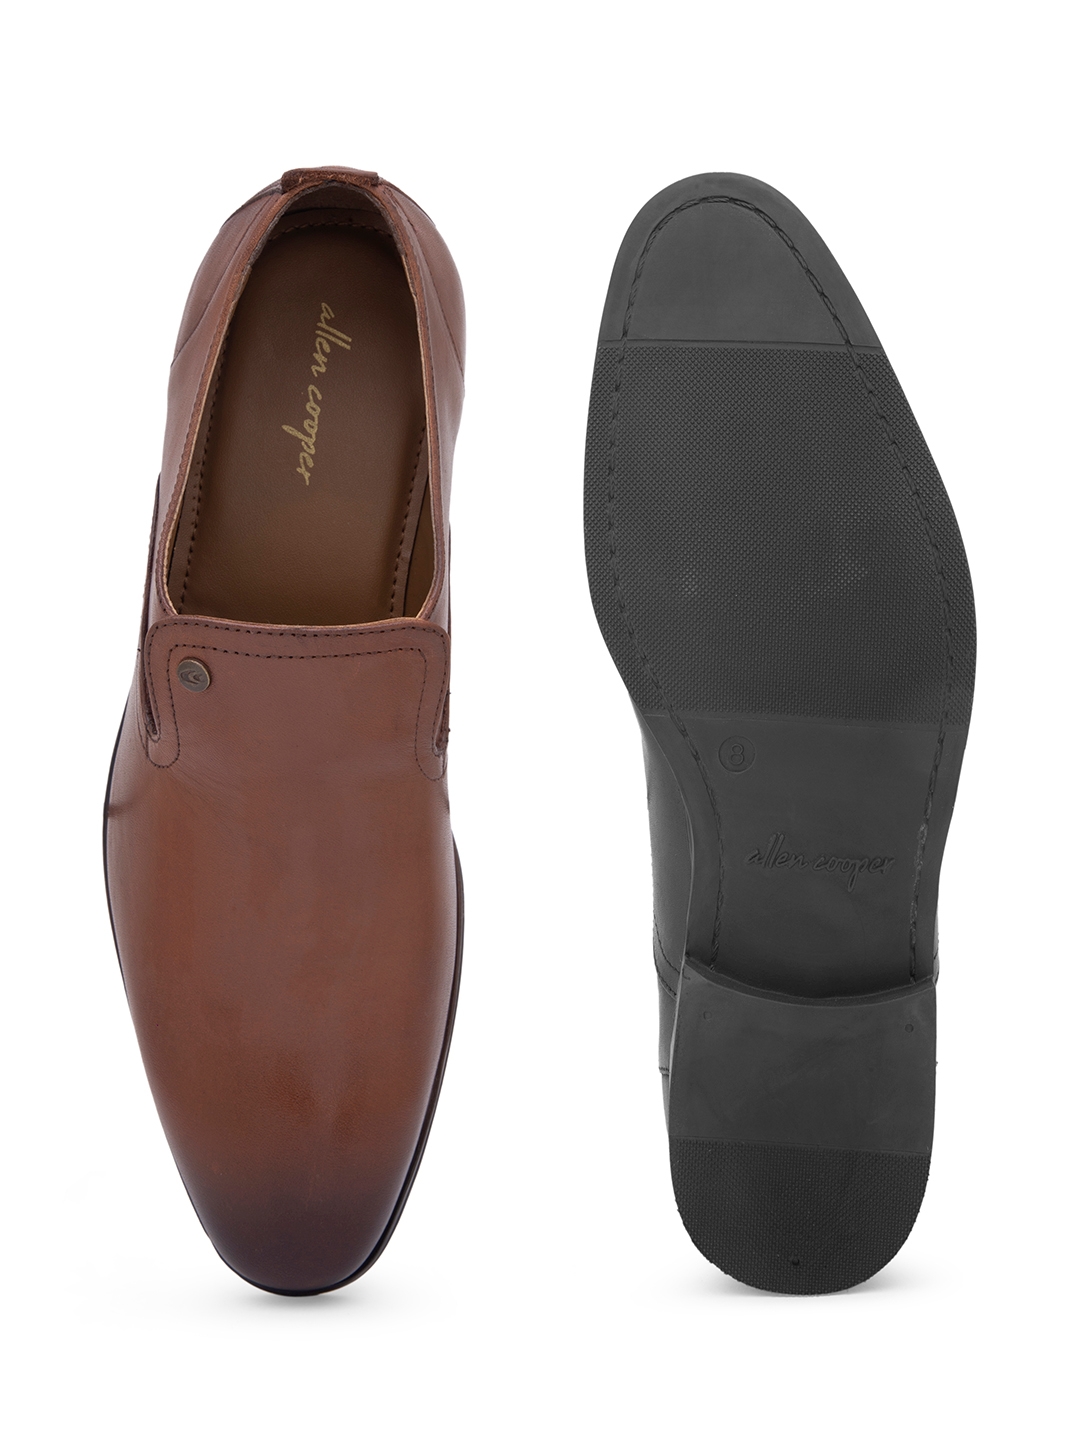 Allen Cooper Formal Shoes For Men